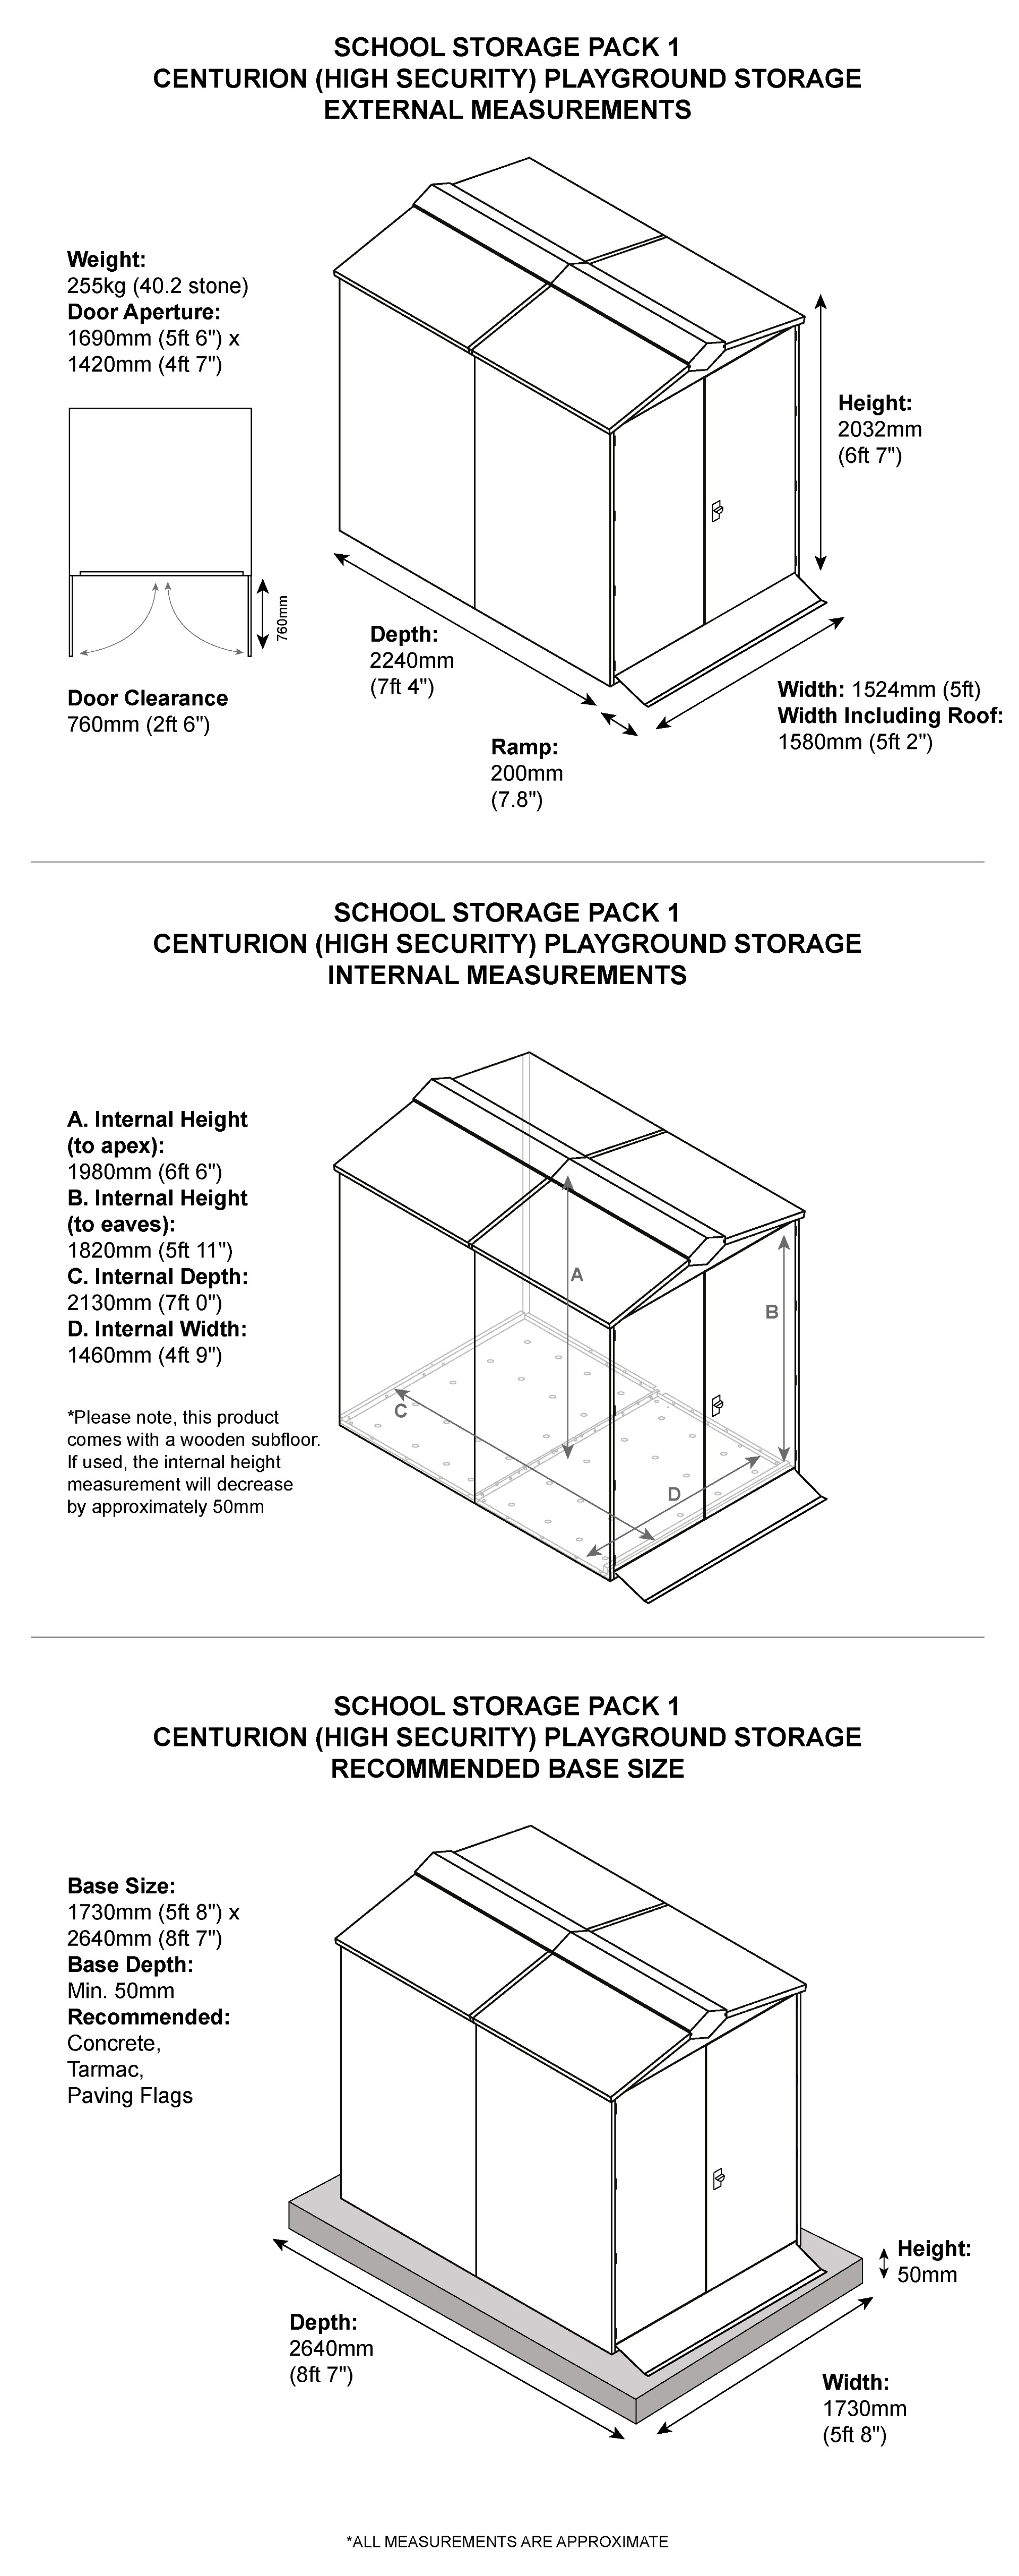 School Storage Pack 1 Dimensions